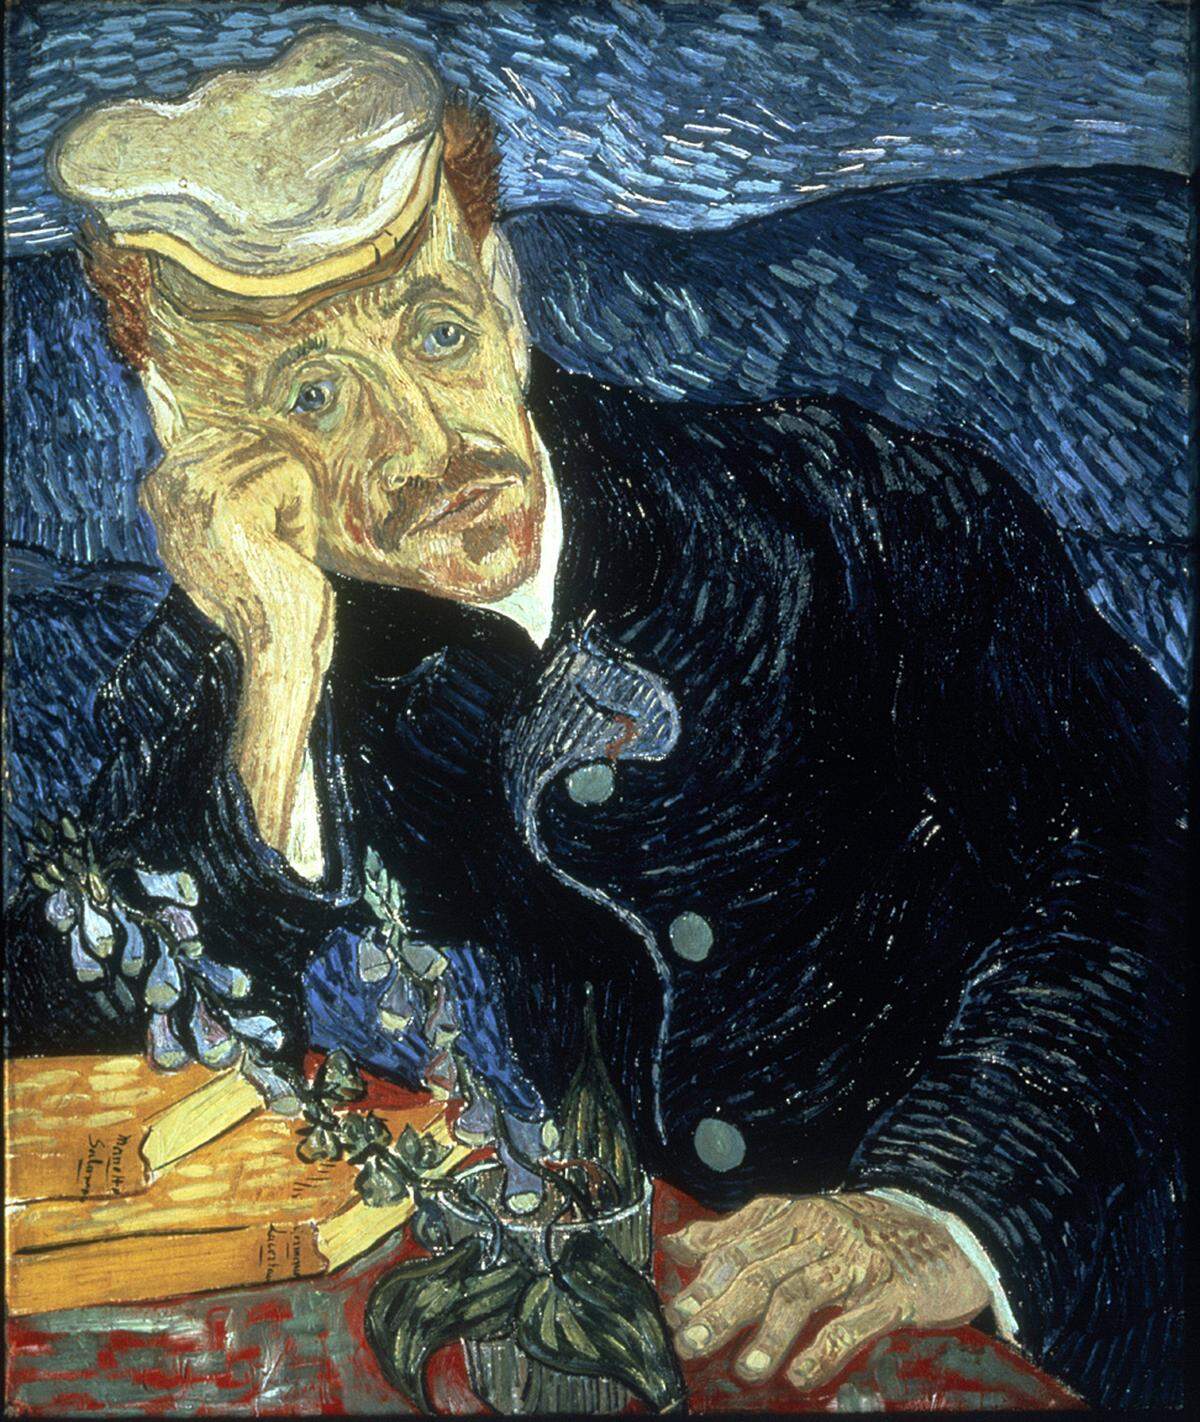 Das 1890 entstandene Werk zeigt den Arzt des Künstlers und wurde 1990 für 82,5 Millionen Dollar verkauft. Wenige Wochen nach Fertigstellung des Gemäldes schoss sich Van Gogh selbst in die Brust. In seinen letzten Stunden war der porträtierte Doktor bei ihm. Da die Kugel nicht entfernt werden konnte, versuchte er zumindest die Schmerzen des Malers zu lindern.